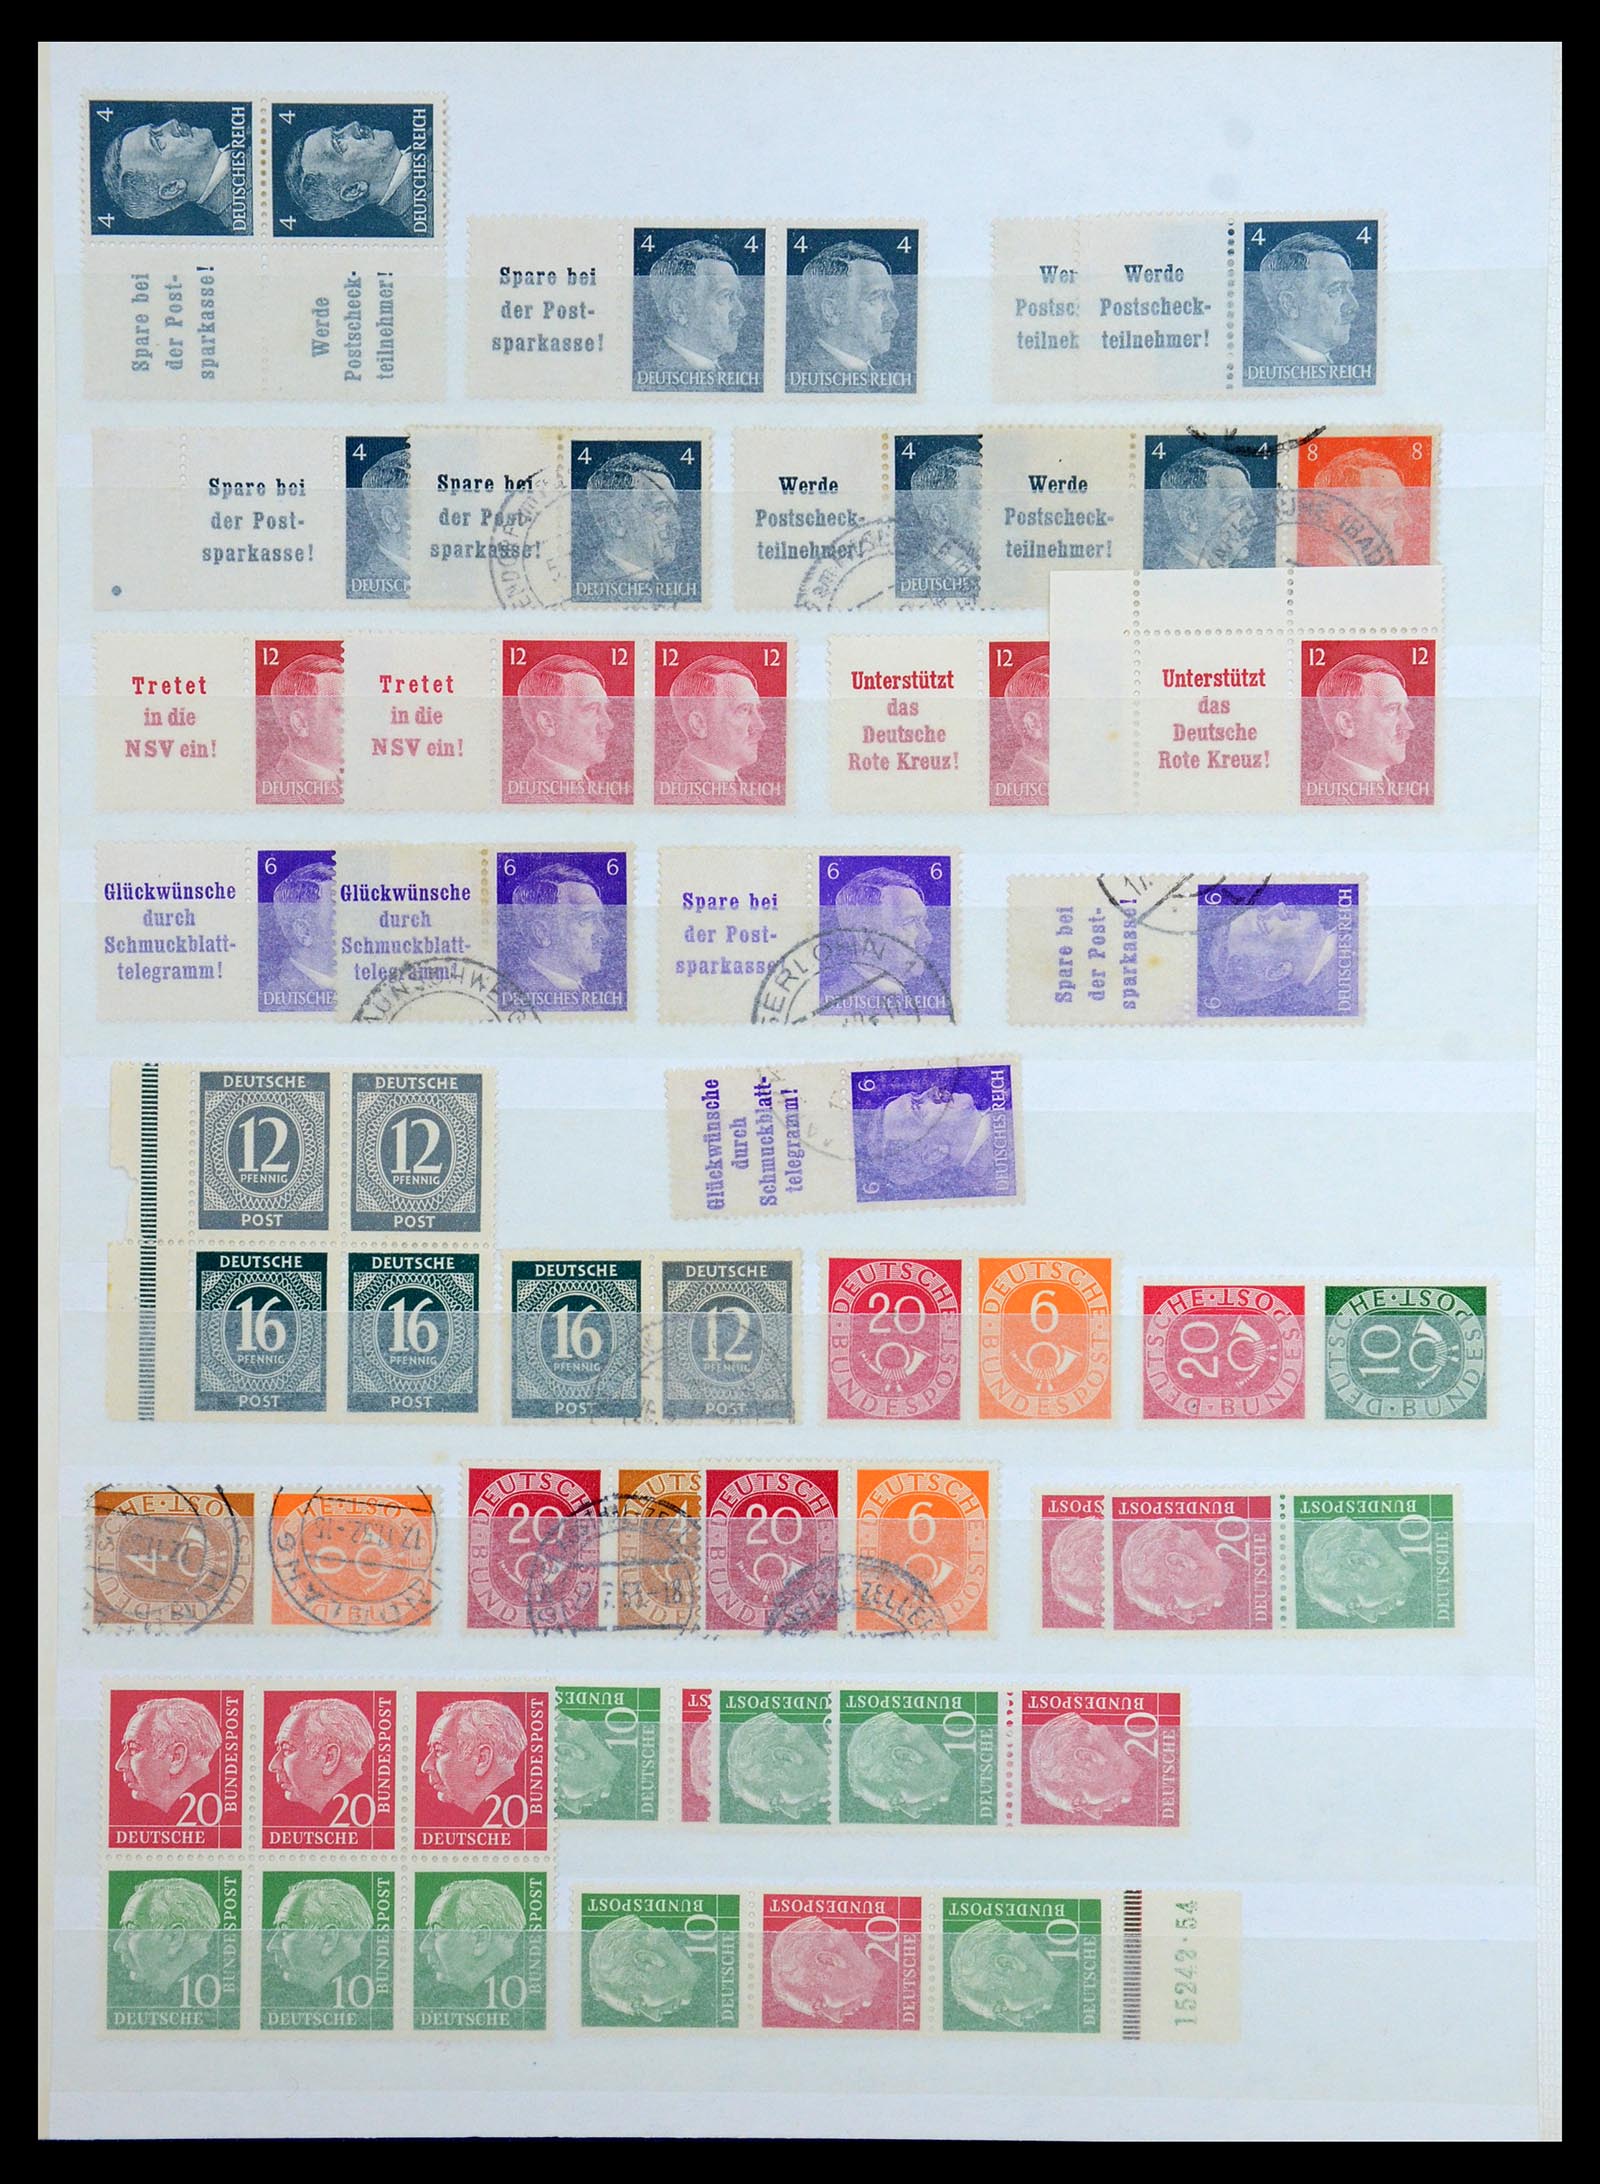 36370 025 - Postzegelverzameling 36370 Duitsland combinaties 1910-1980.